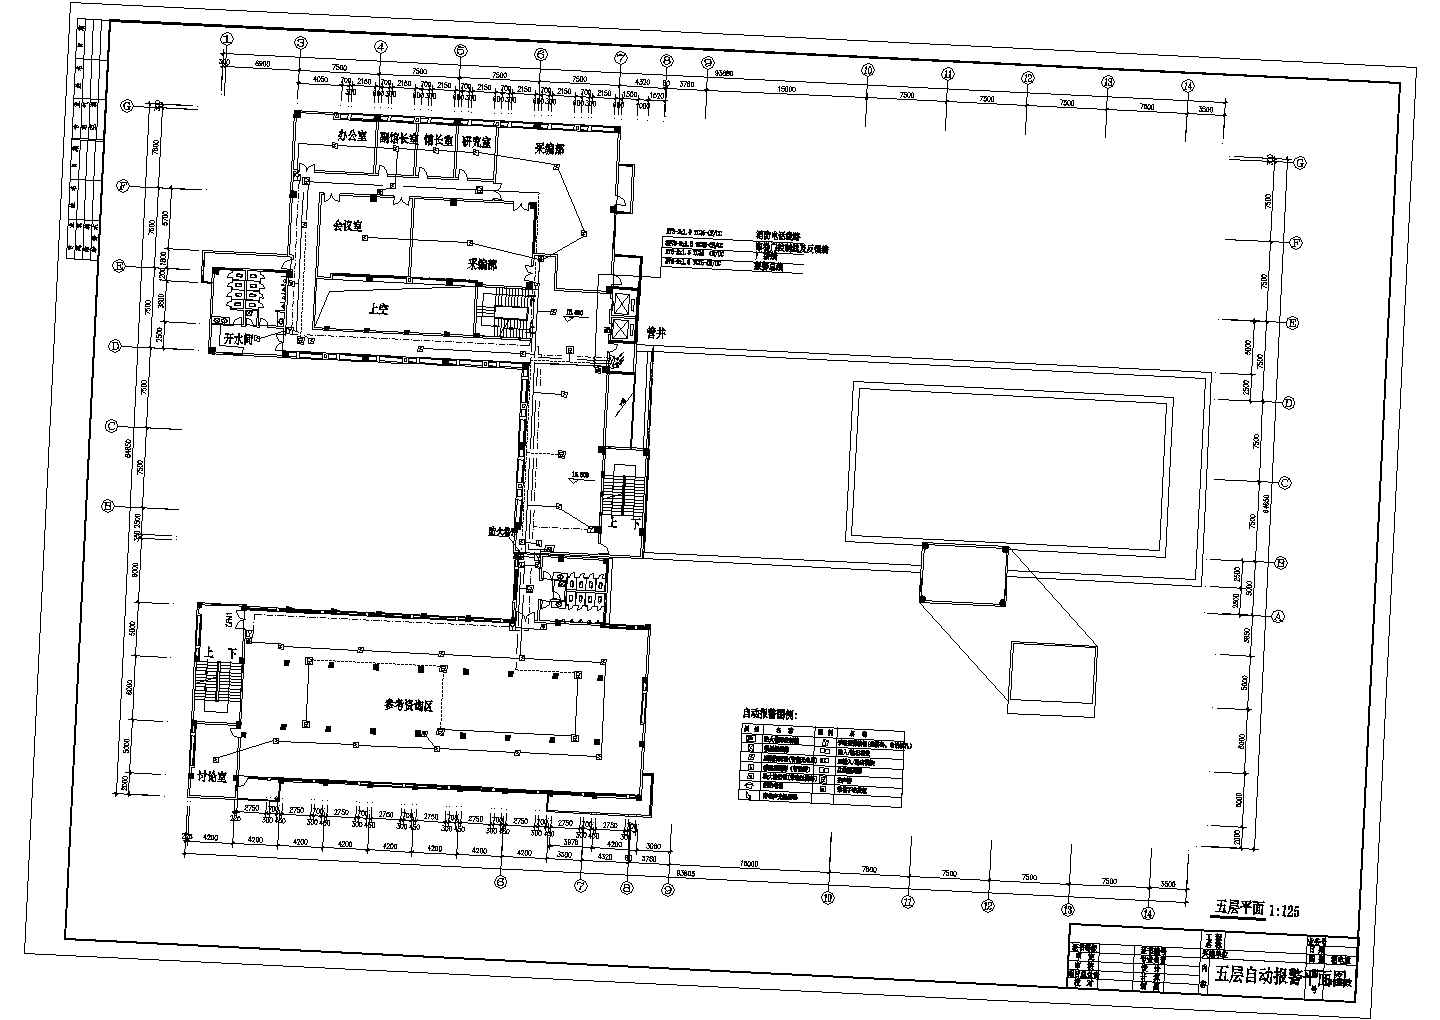 某长93.88米 宽64.65米 地下1地上5层大学图书馆消防电气CAD完整施工设计图（各层自动报警平面 自动报警系统图 防火卷帘及消防栓泵控制原理图）